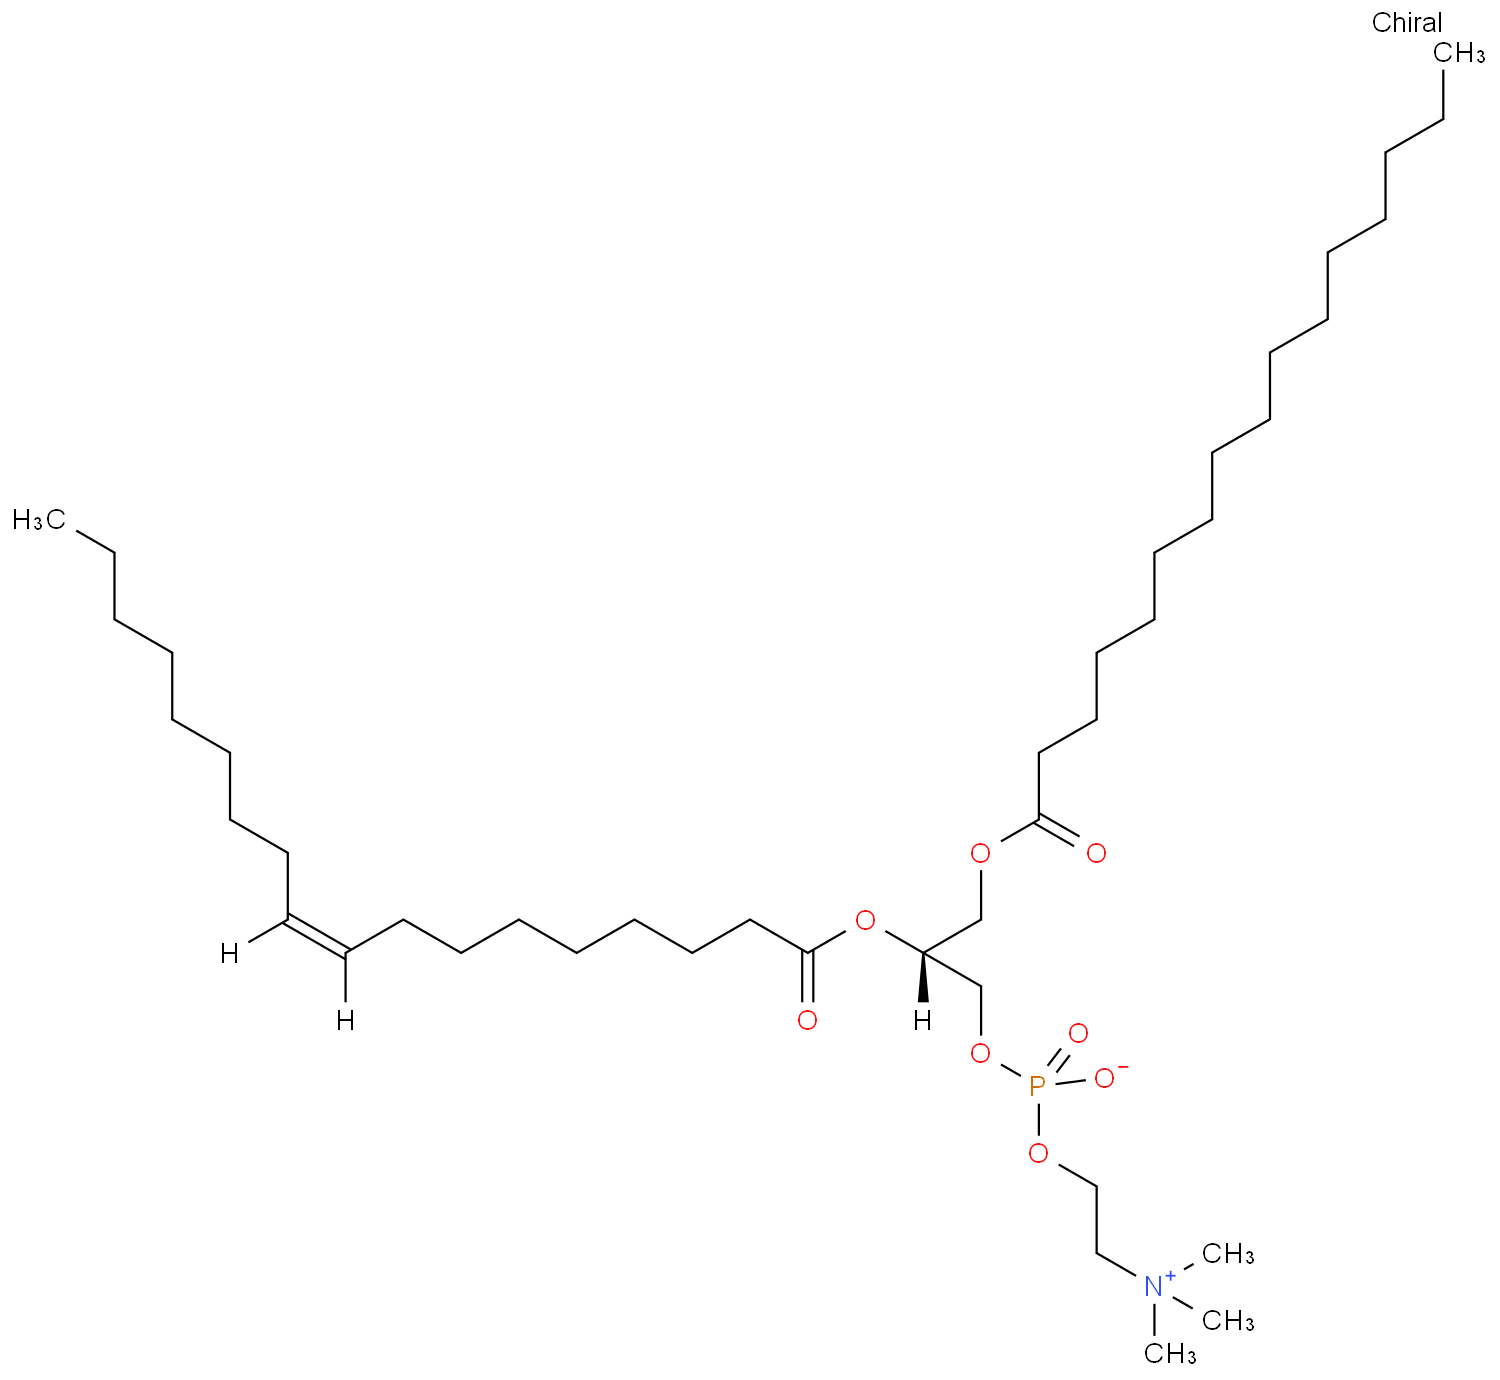 2-Oleoyl-1-palmitoyl-sn-glycero-3-phosphocholine  